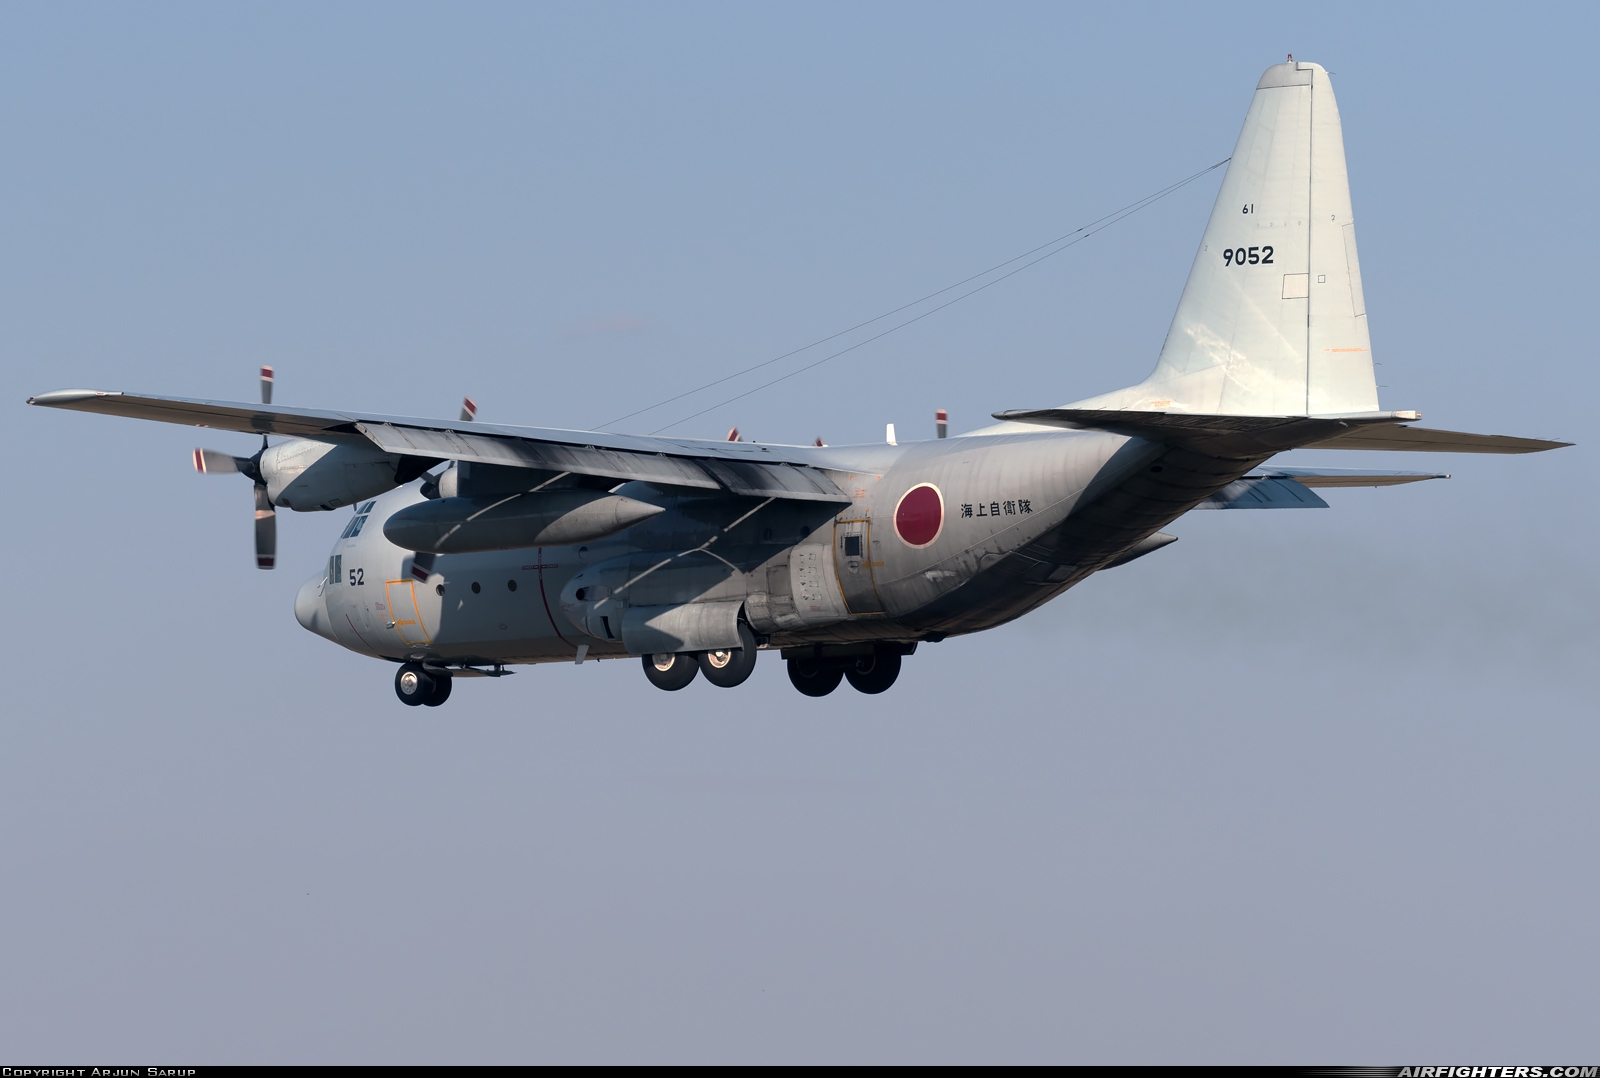 Japan - Navy Lockheed C-130R Hercules (L-382) 61-9052 at Atsugi - Naval Air Facility (RJTA), Japan